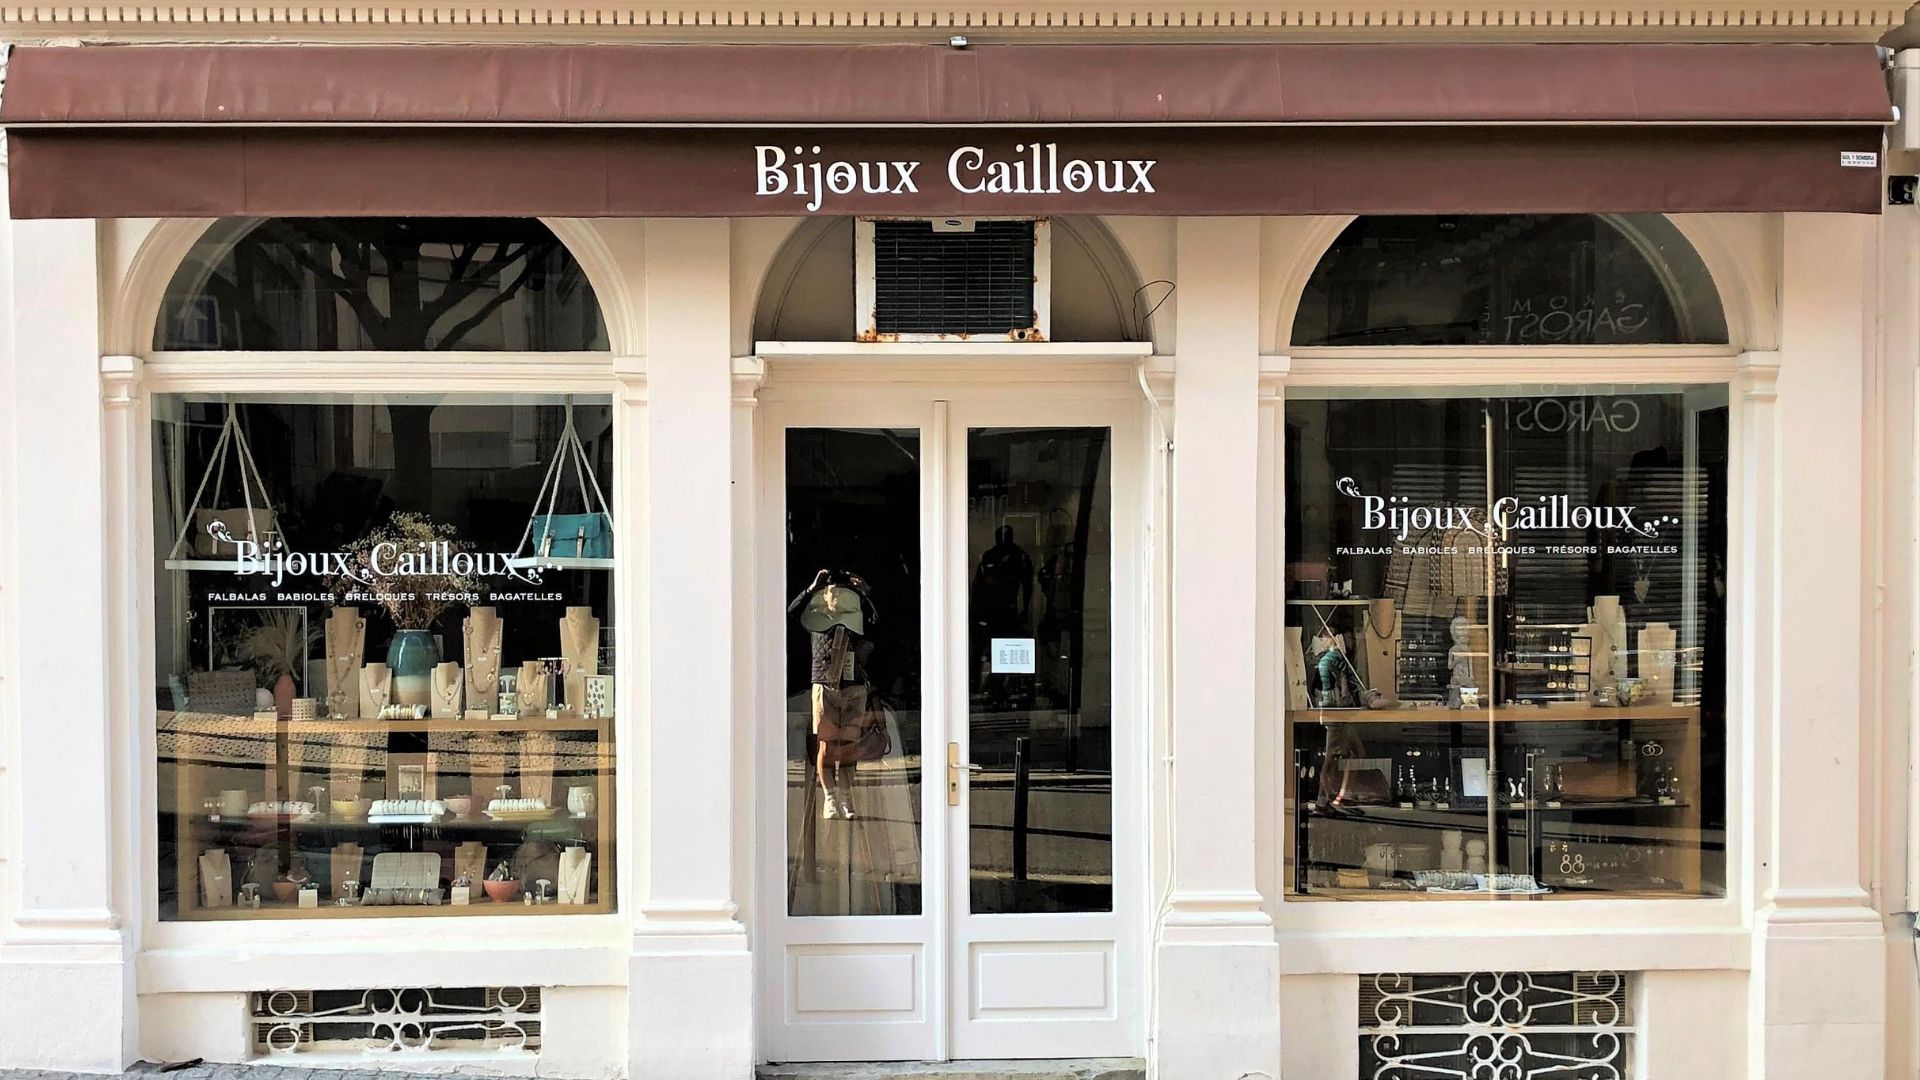 Découvrez la magie de Bijoux Cailloux Biarritz !